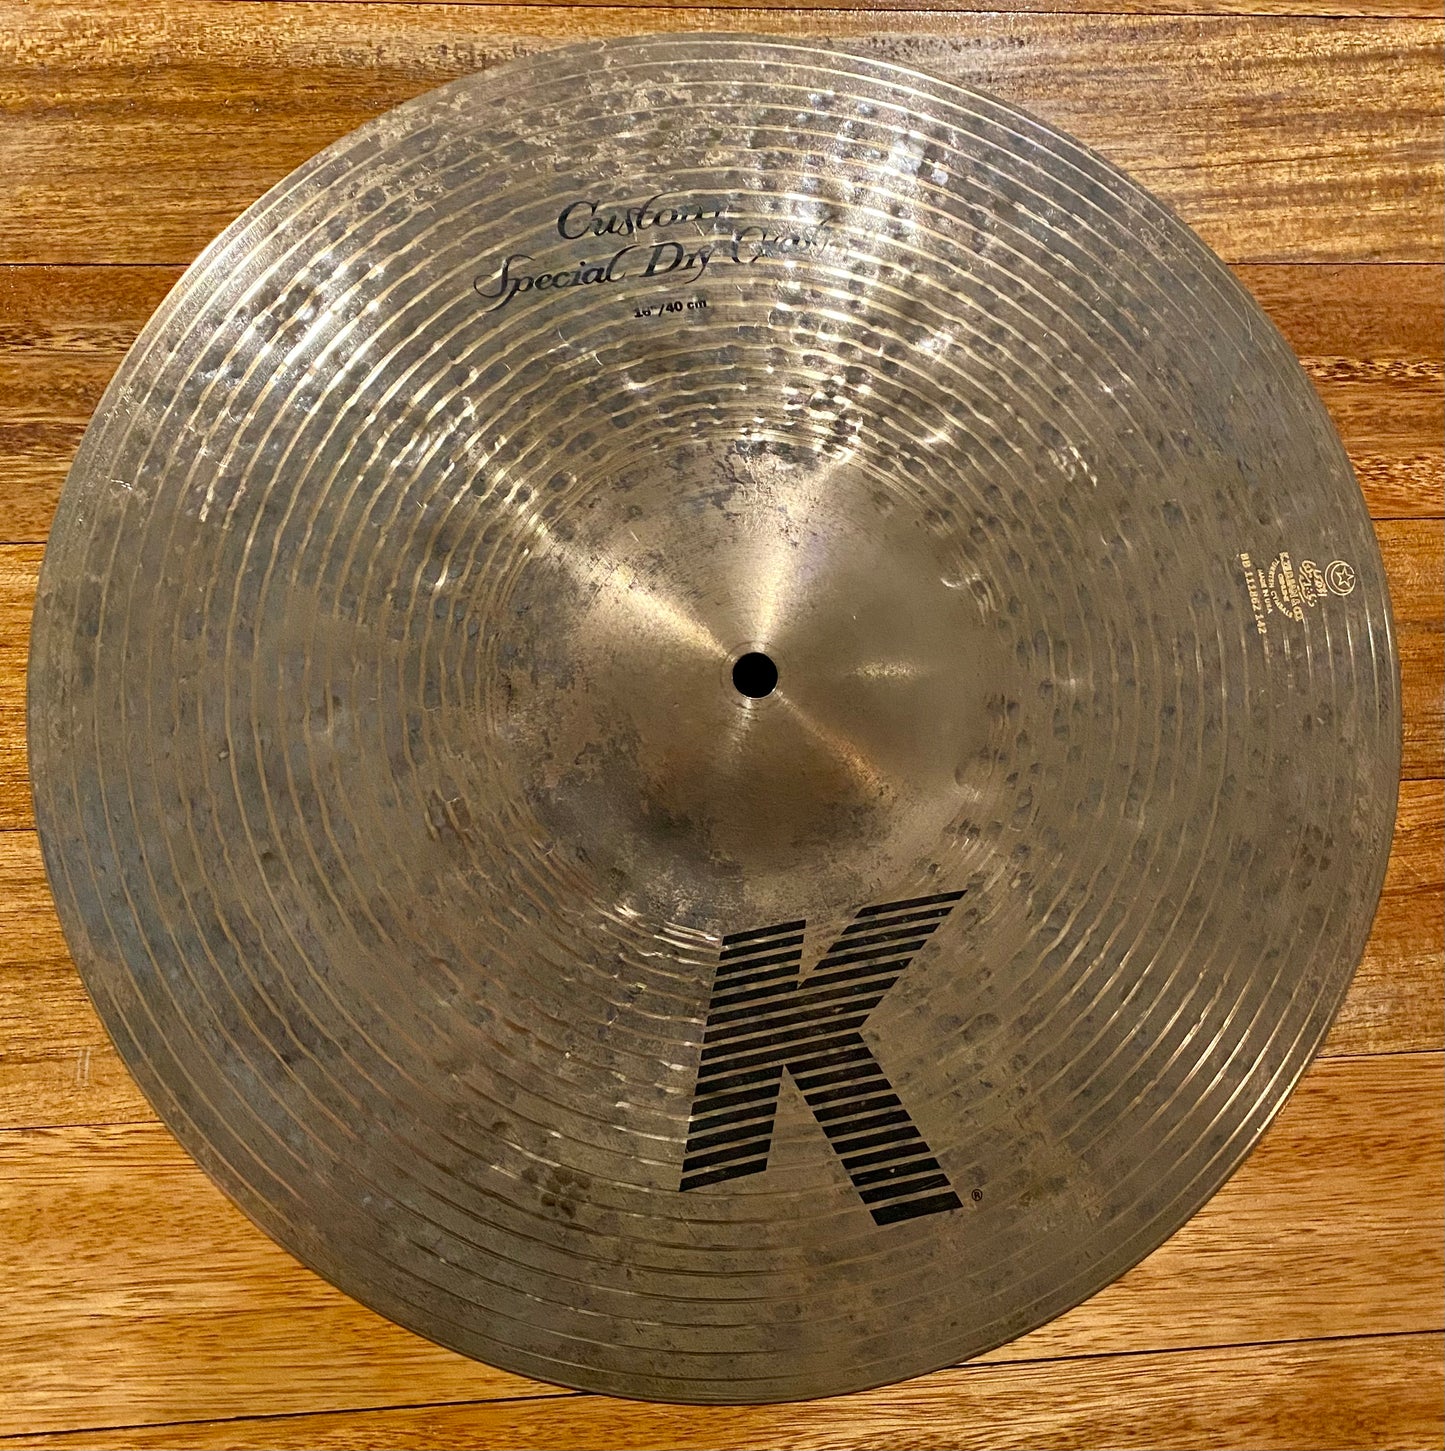 Zildjian K Custom Special Dry 16 Inch Crash Cymbal K1416